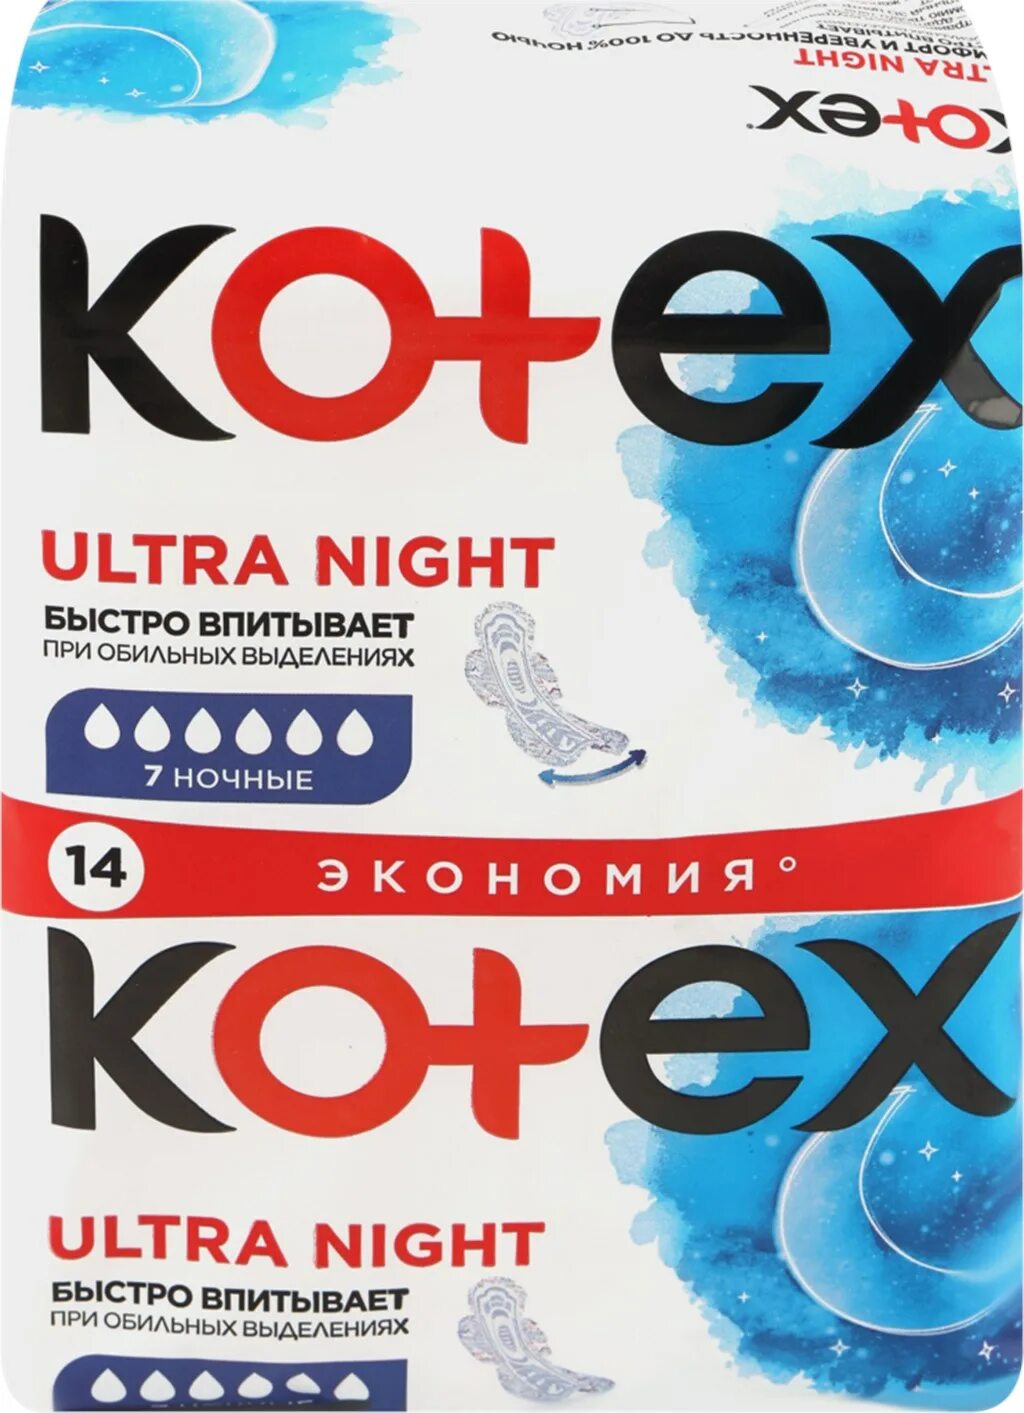 Kotex Ultra прокладки ночные сетч 14 шт. Kotex прокладки ультра сетч Найт 14шт. Kotex прокладки natural ночные 6 капель. Котех прокладки ночные.